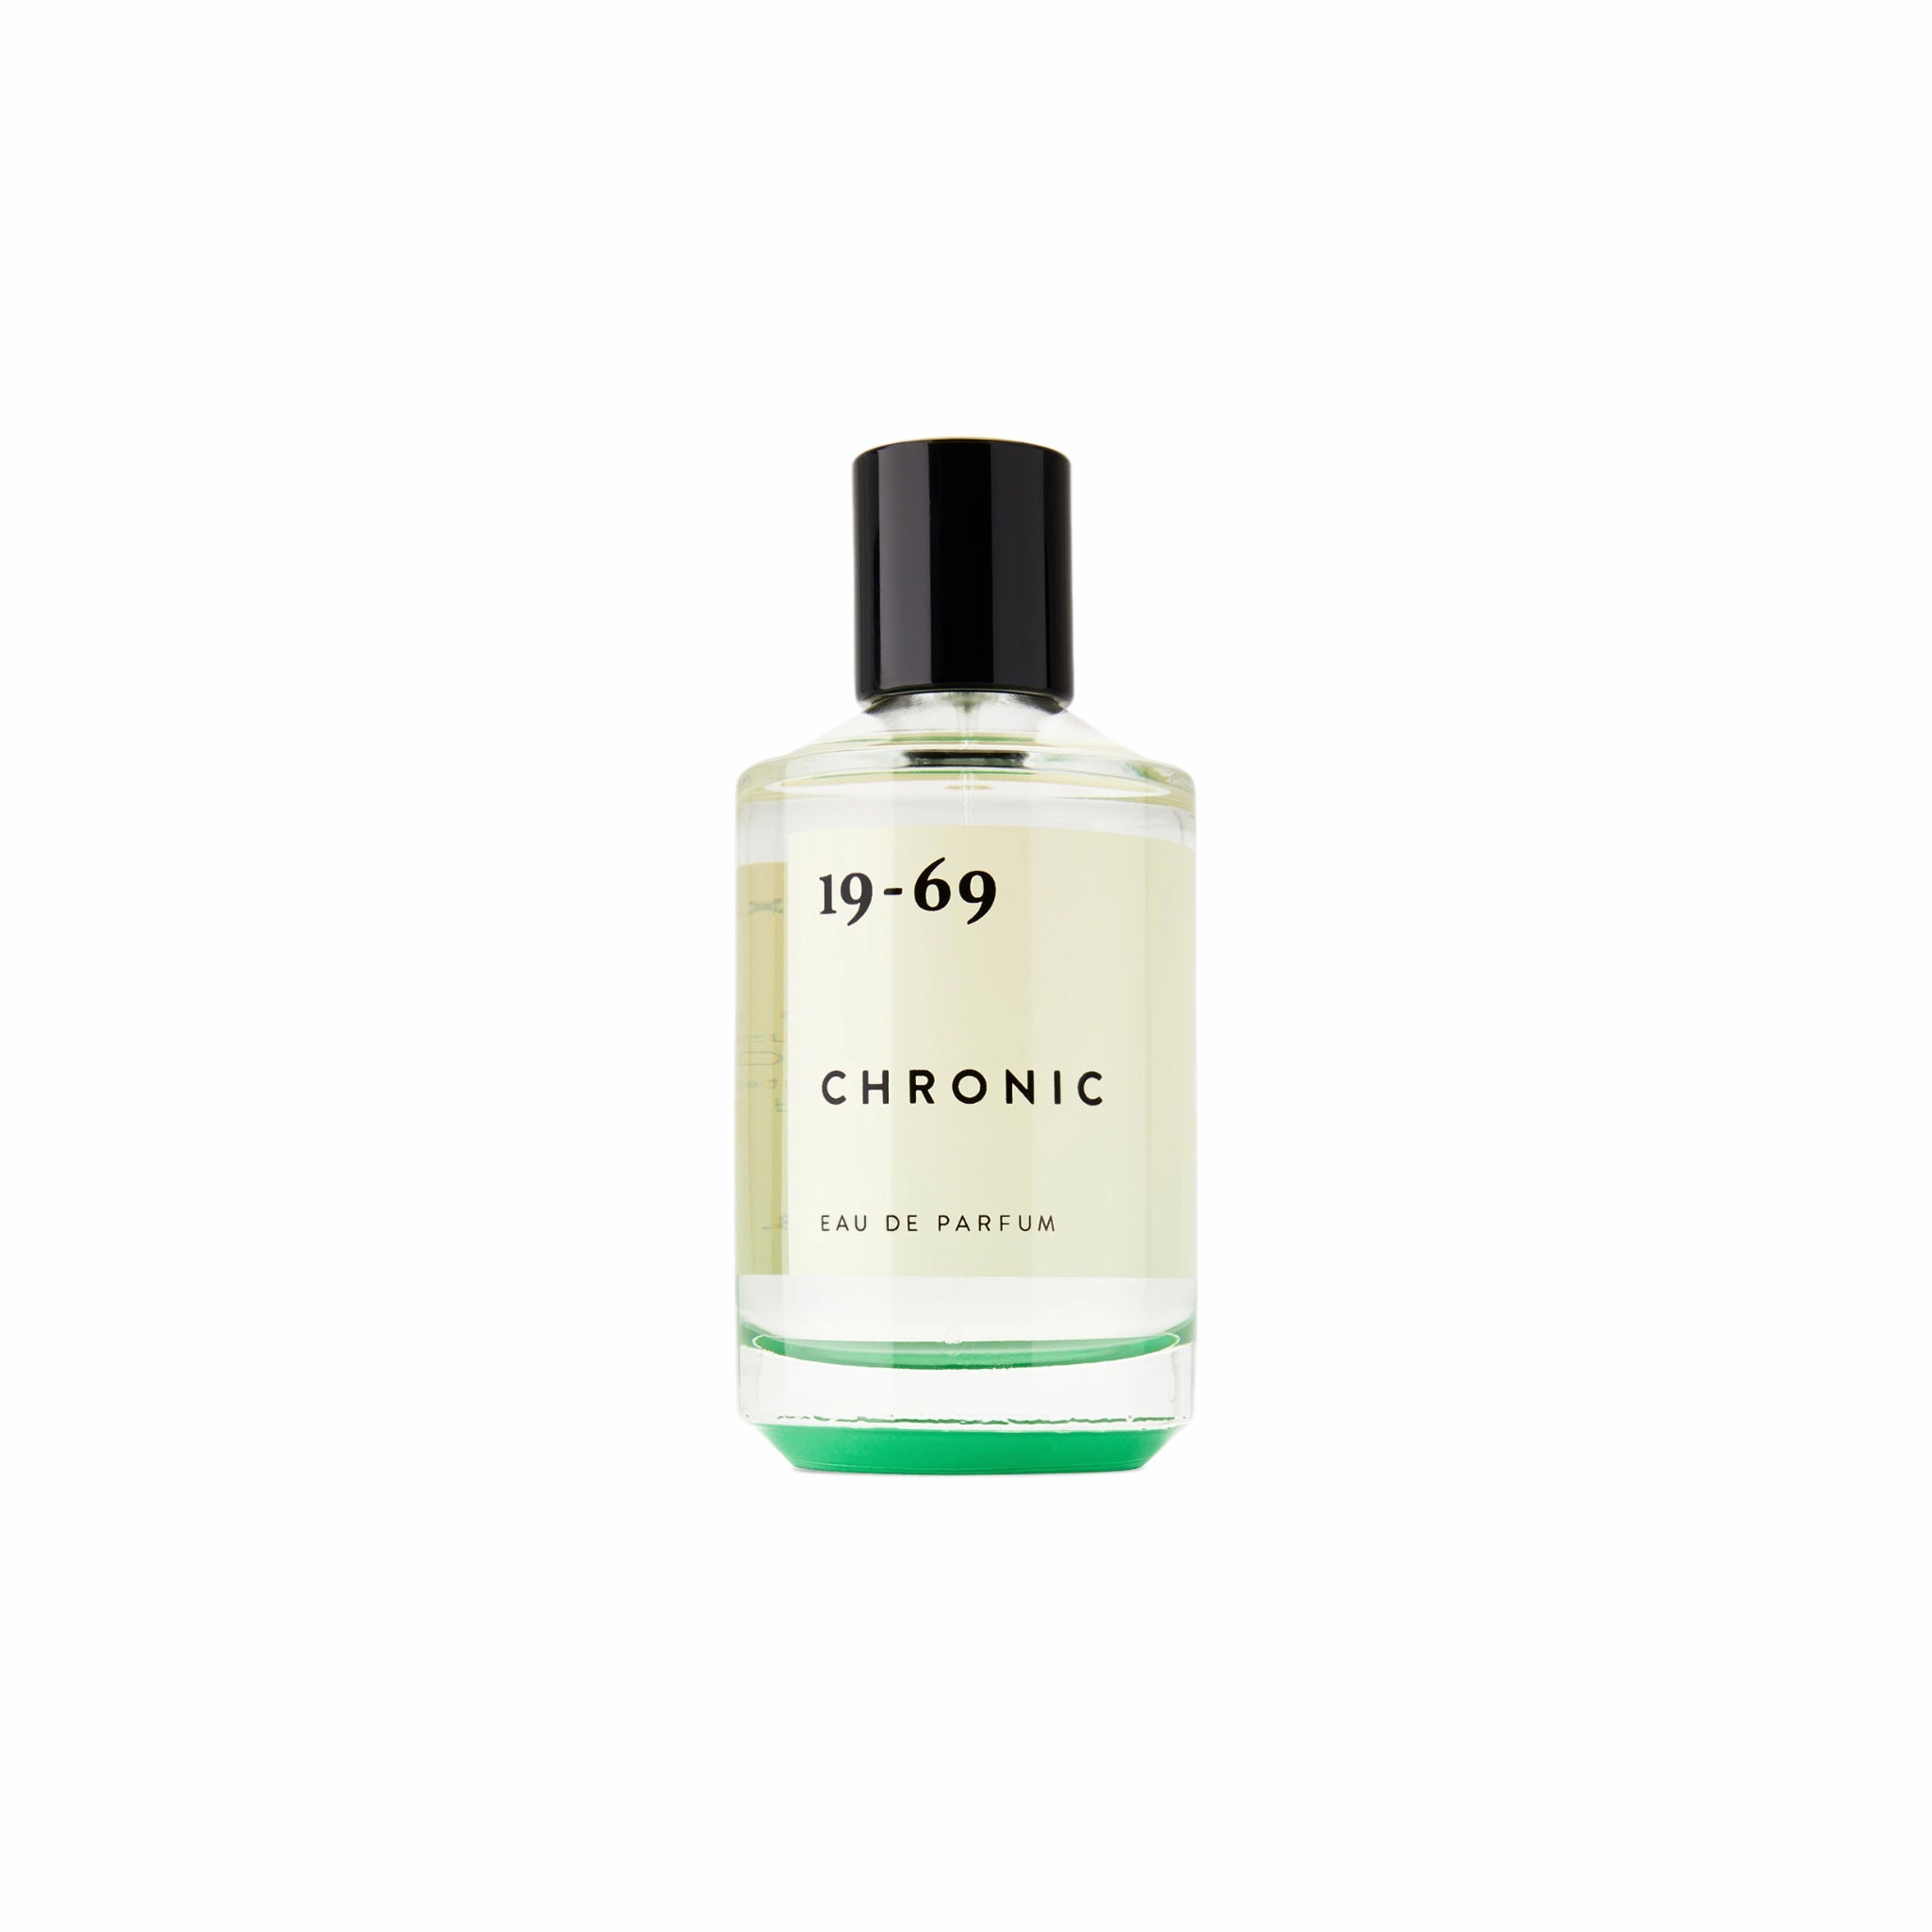 19-69, 19-69 Chronic Eau de Parfum (50mL)